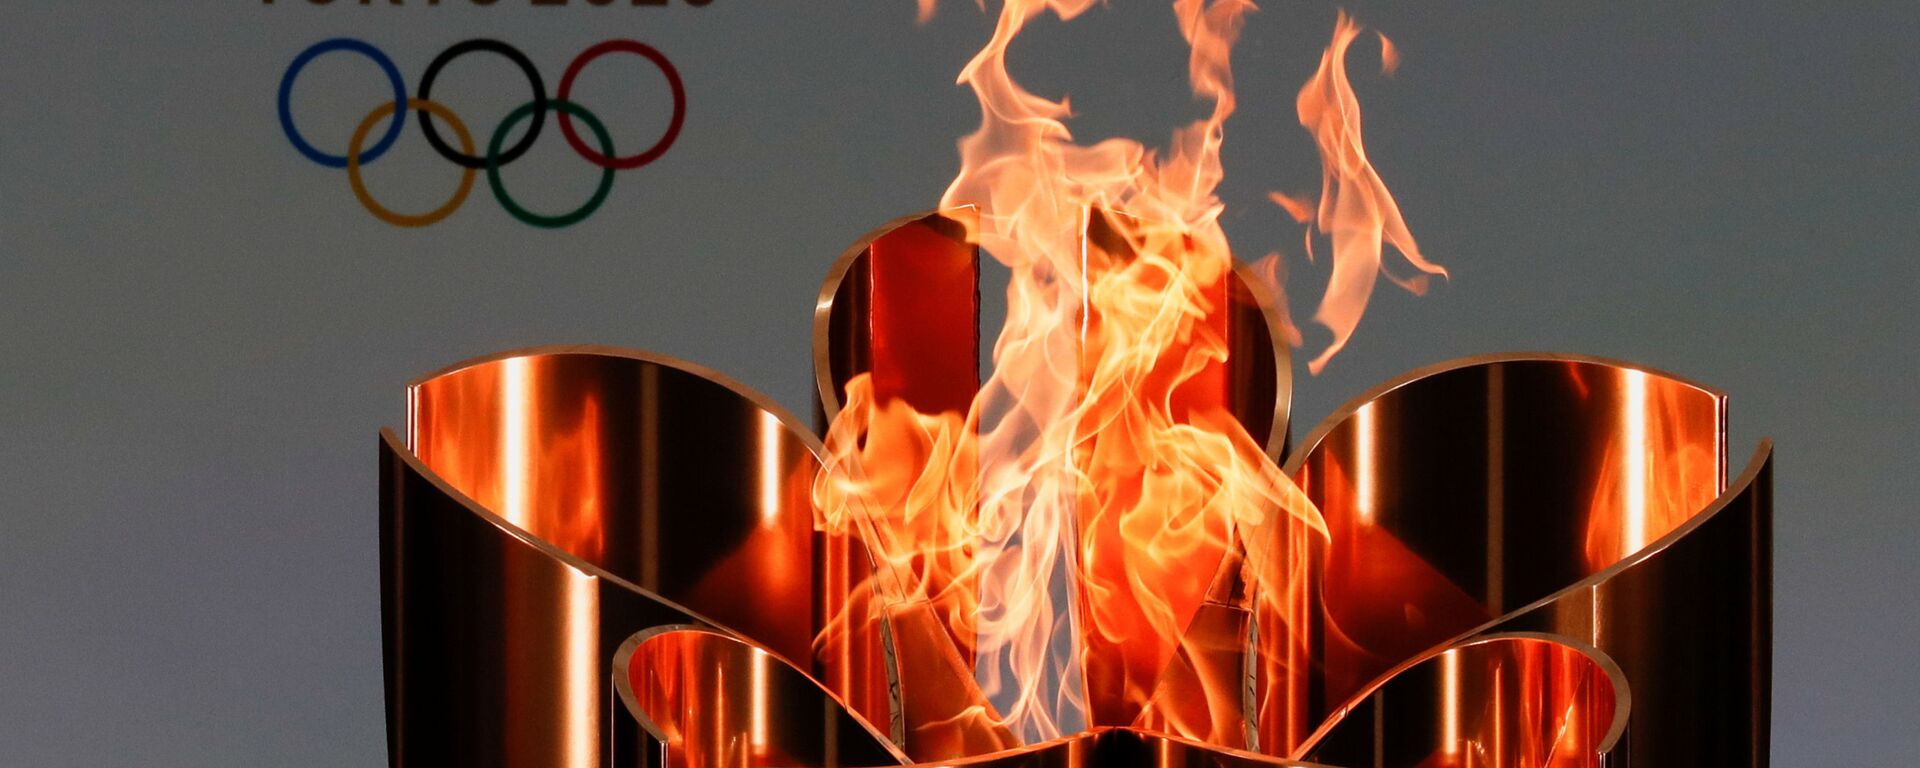 Олимпийский огонь во время эстафеты Олимпийского огня в Токио-2020 в префектуре Фукусима, Япония - Sputnik Таджикистан, 1920, 17.07.2021